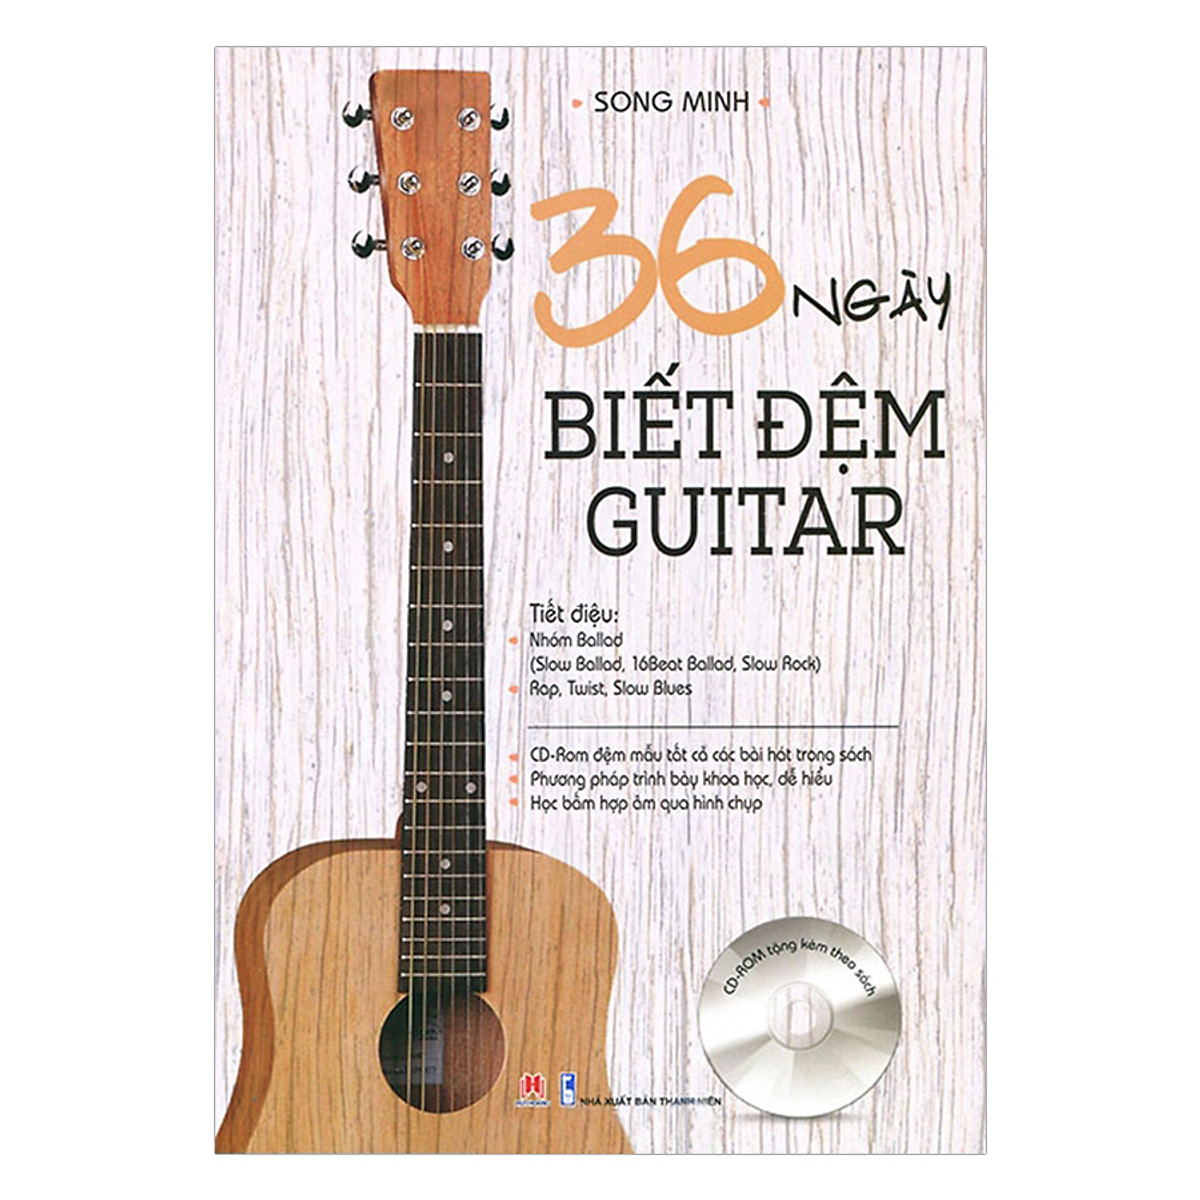 36 Ngày Biết Đệm Guitar (Kèm CD)